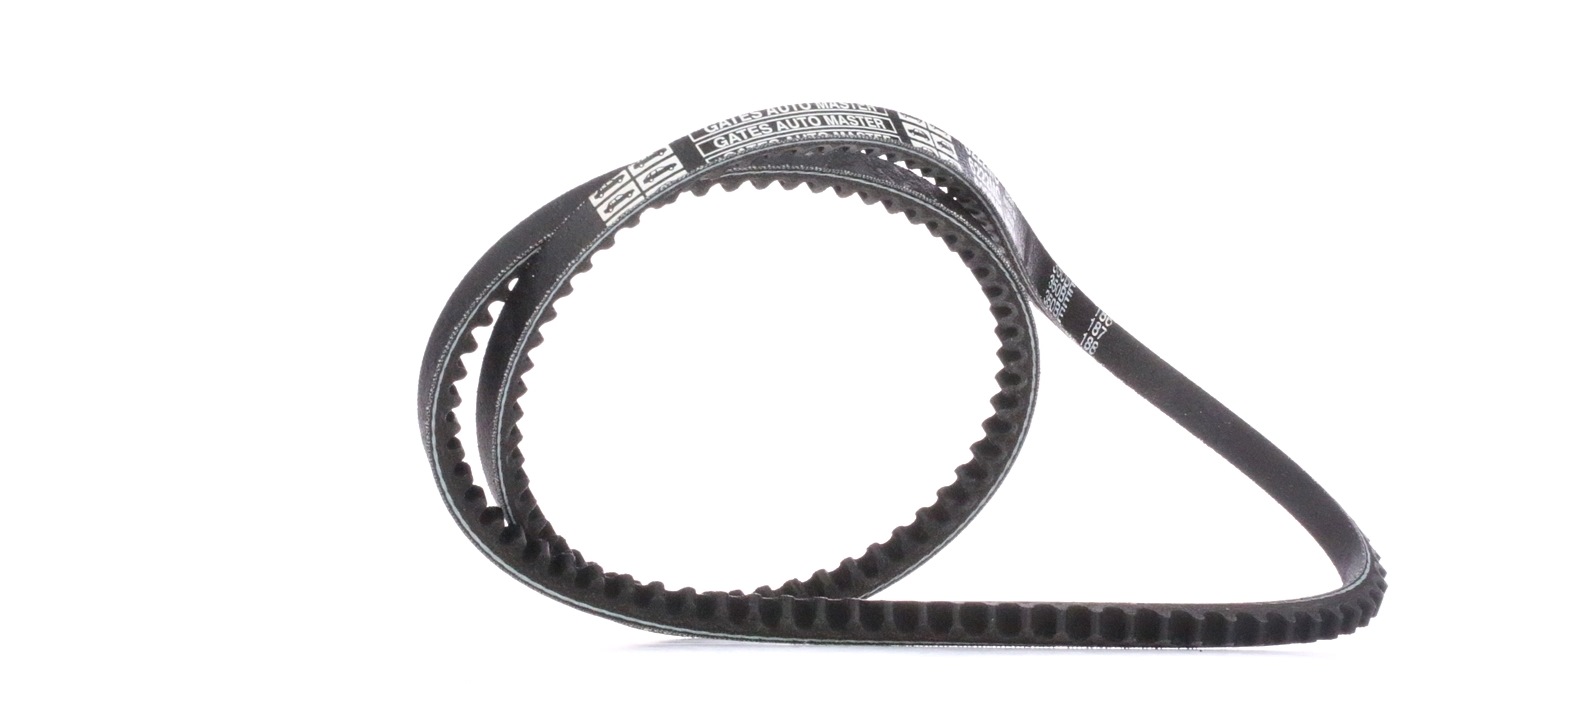 Buy V-Belt GATES 6222MC - VW Belts, chains, rollers parts online